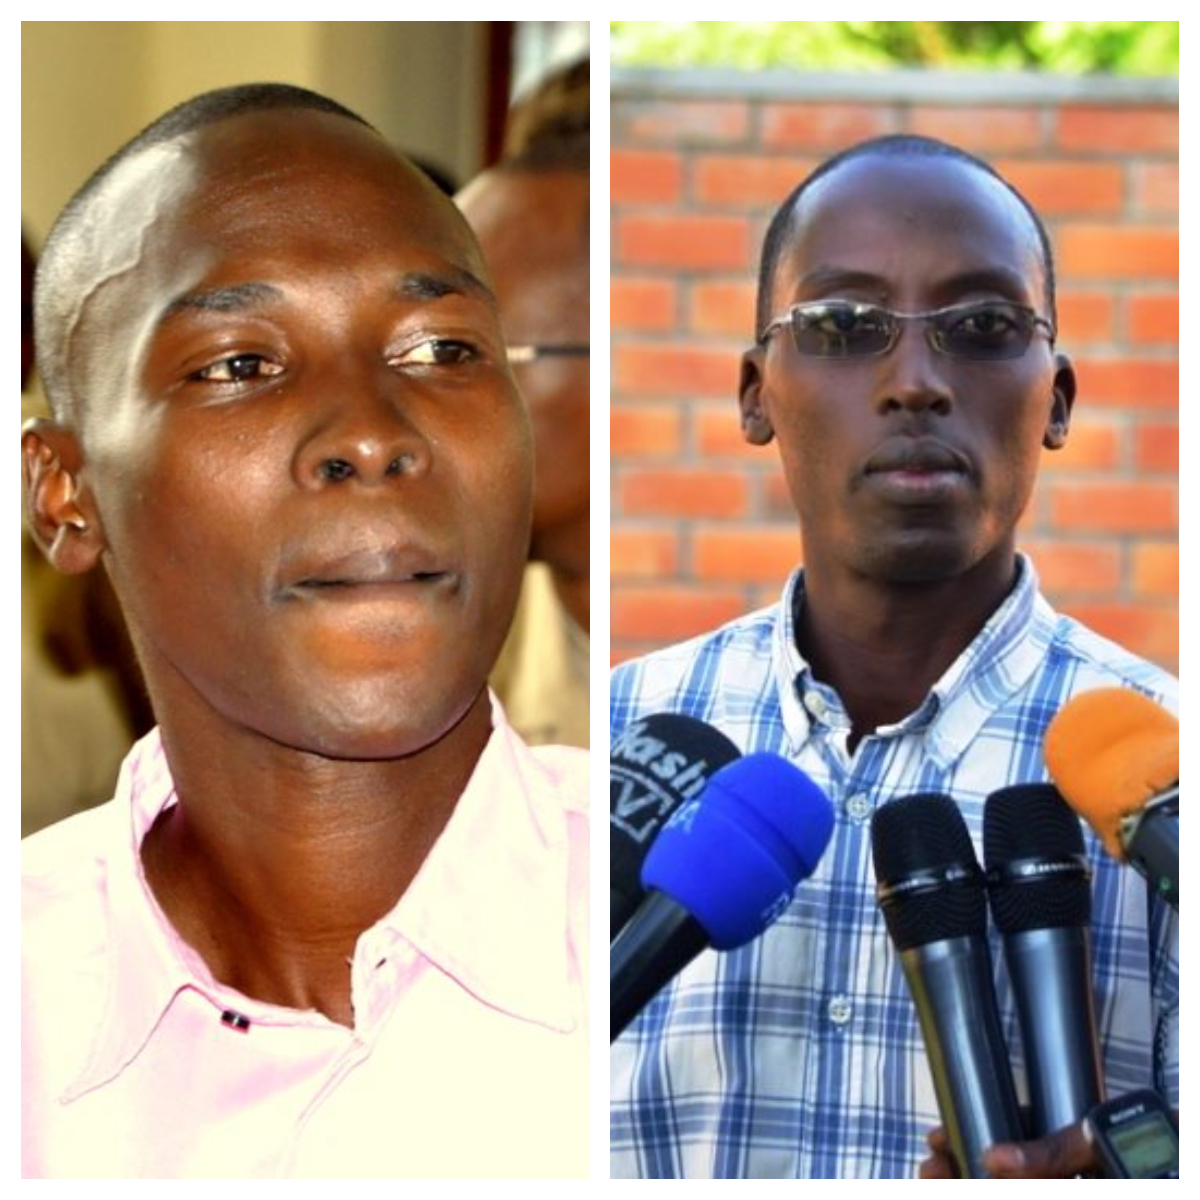 Ntamuhanga, Ndayizera Sentenced in ‘Dynamite Terror’ Trial